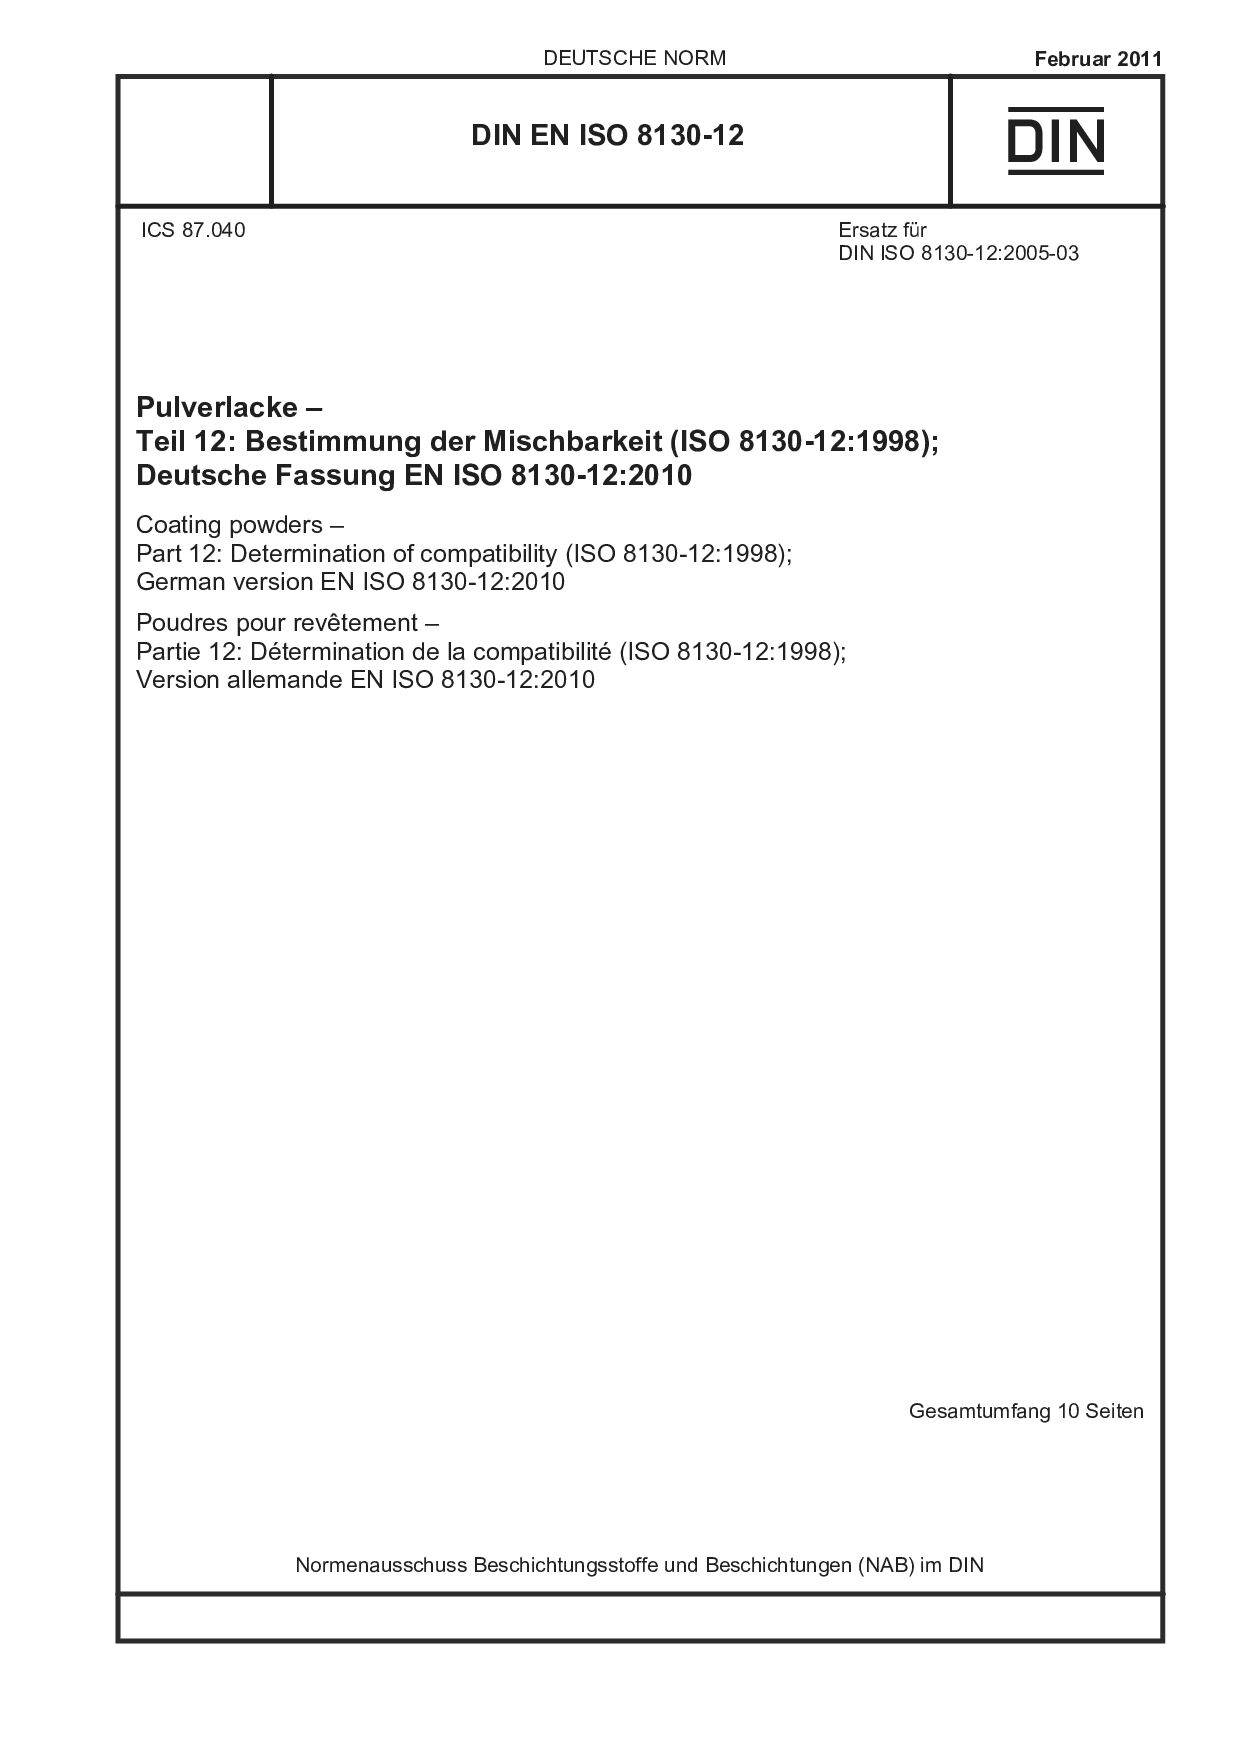 DIN EN ISO 8130-12:2011